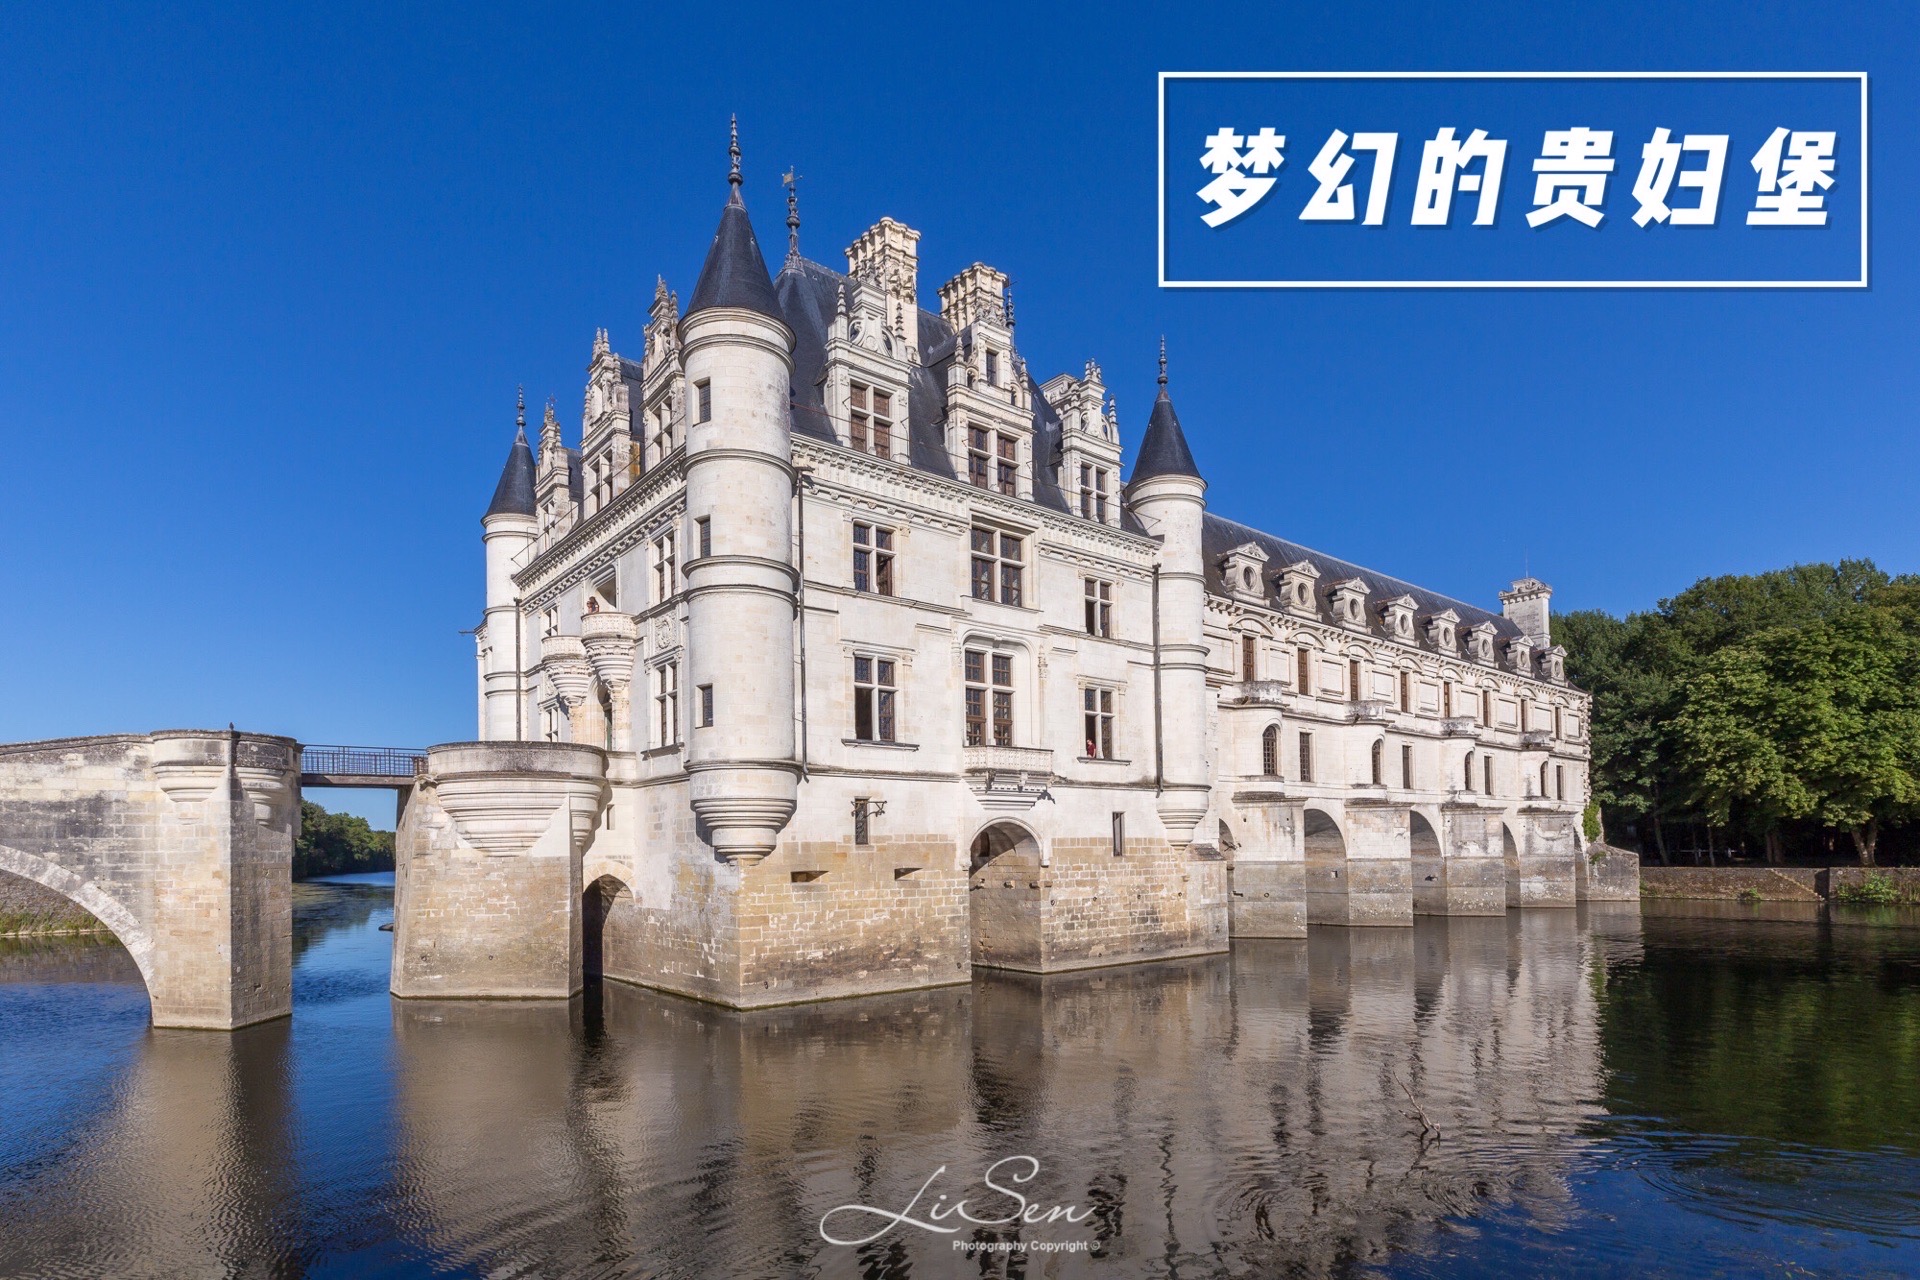 卢瓦尔河谷浪漫古堡之旅：水上城堡舍农索城堡游玩攻略 ——————— 这座被称为“贵妇堡”的舍农索城堡